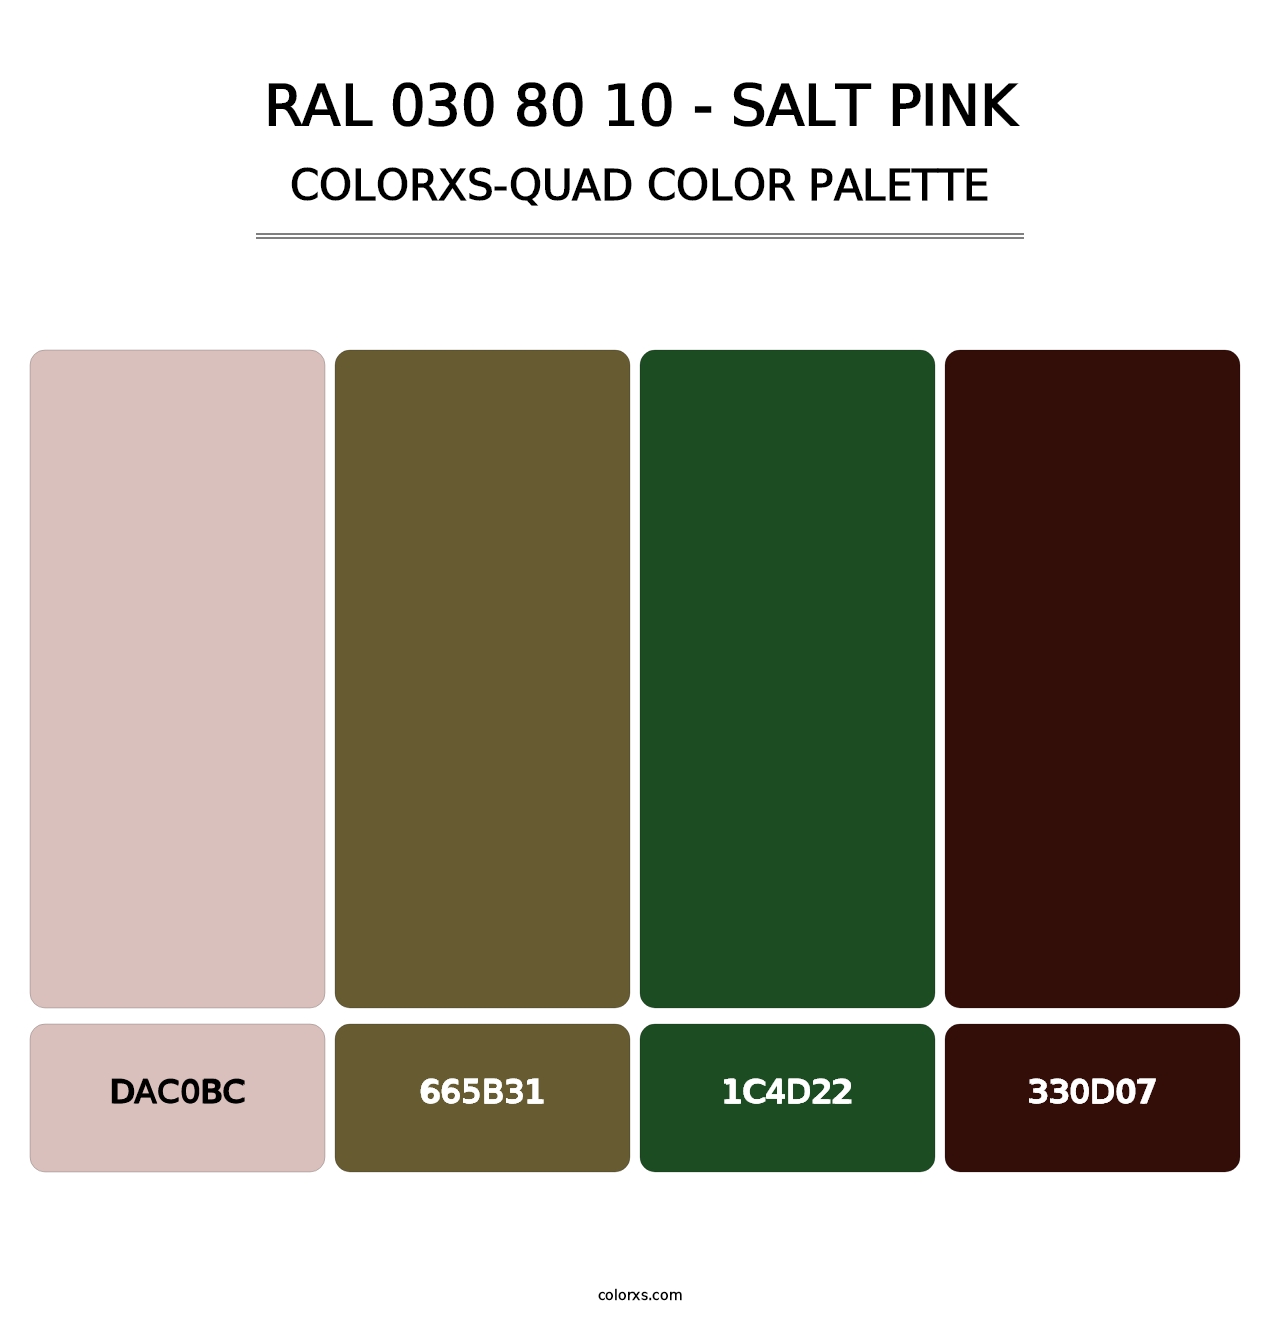 RAL 030 80 10 - Salt Pink - Colorxs Quad Palette